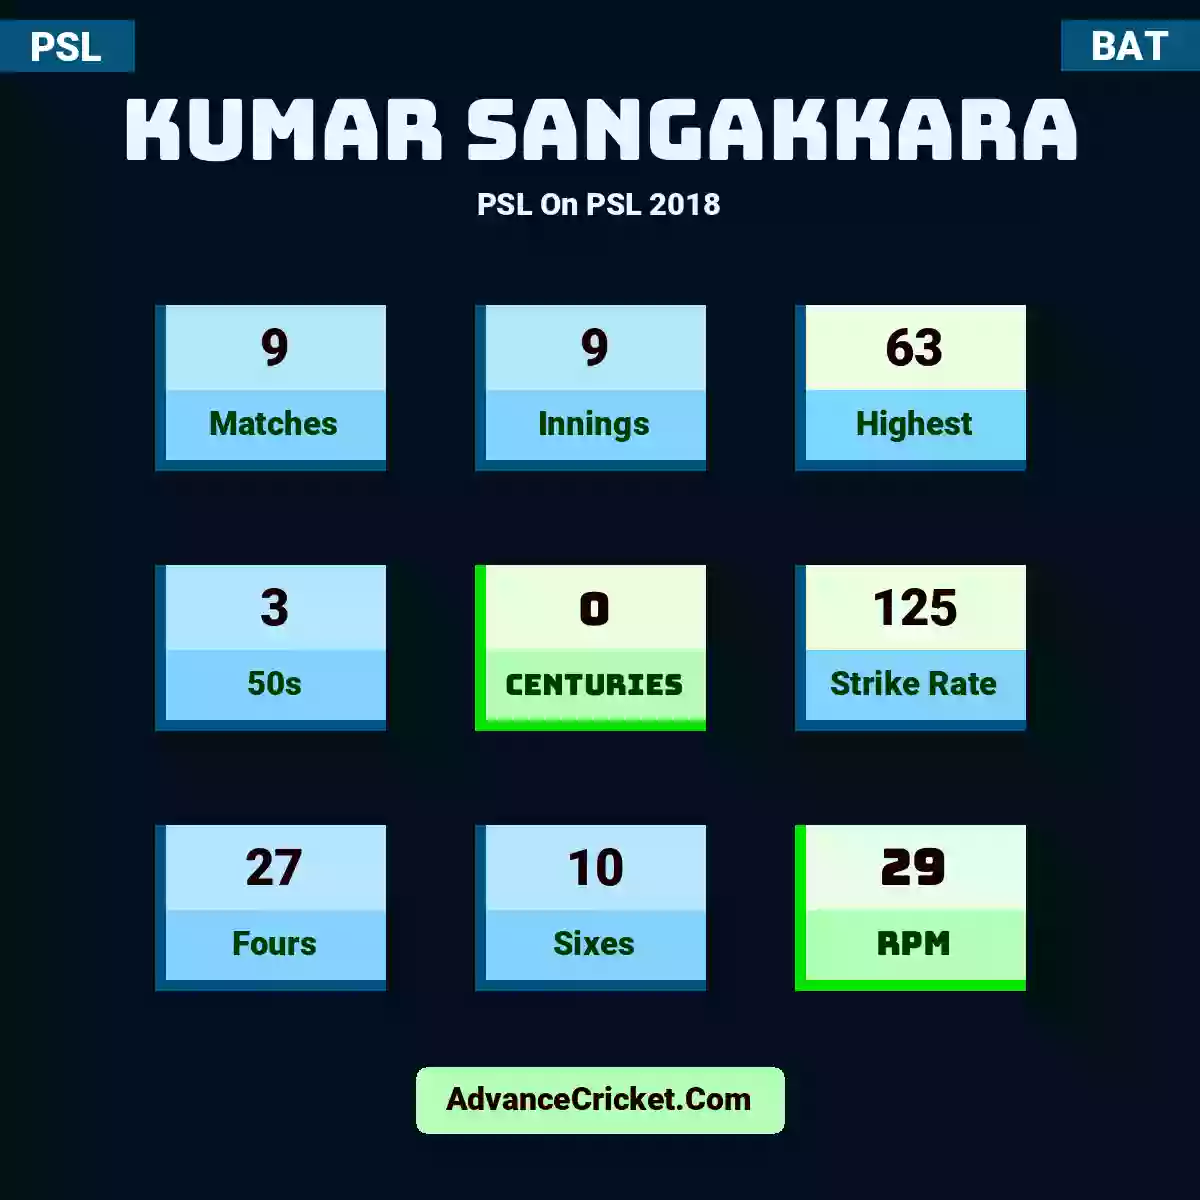 Kumar Sangakkara PSL  On PSL 2018, Kumar Sangakkara played 9 matches, scored 63 runs as highest, 3 half-centuries, and 0 centuries, with a strike rate of 125. K.Sangakkara hit 27 fours and 10 sixes, with an RPM of 29.